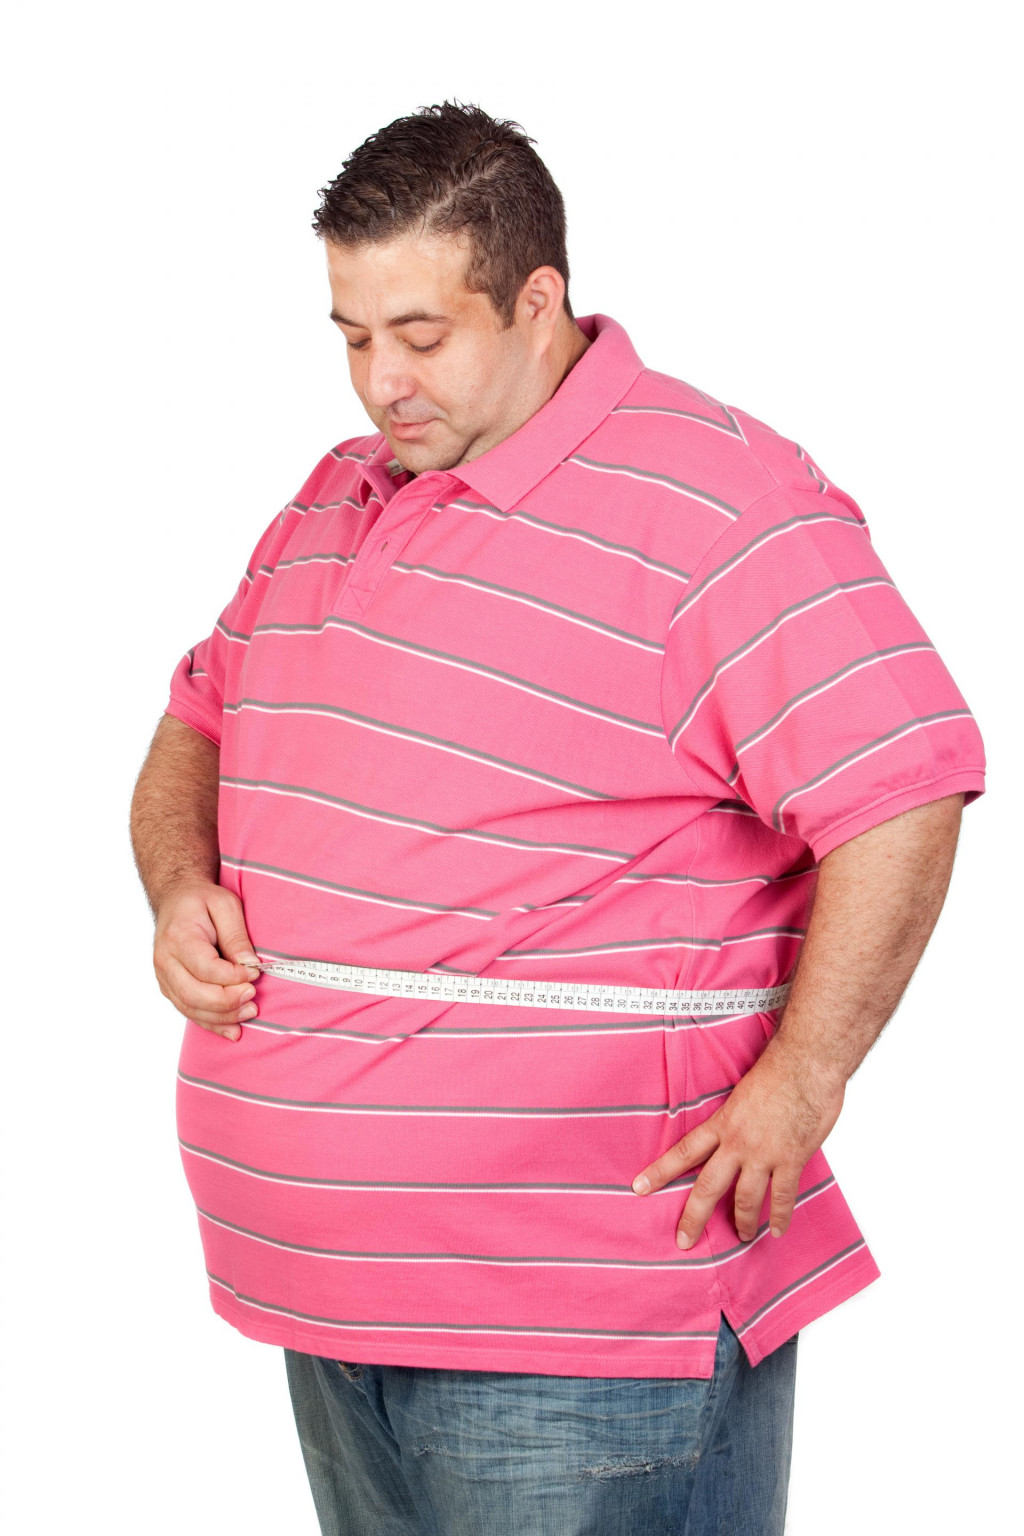 Obezita ovplyvňuje celý organizmus